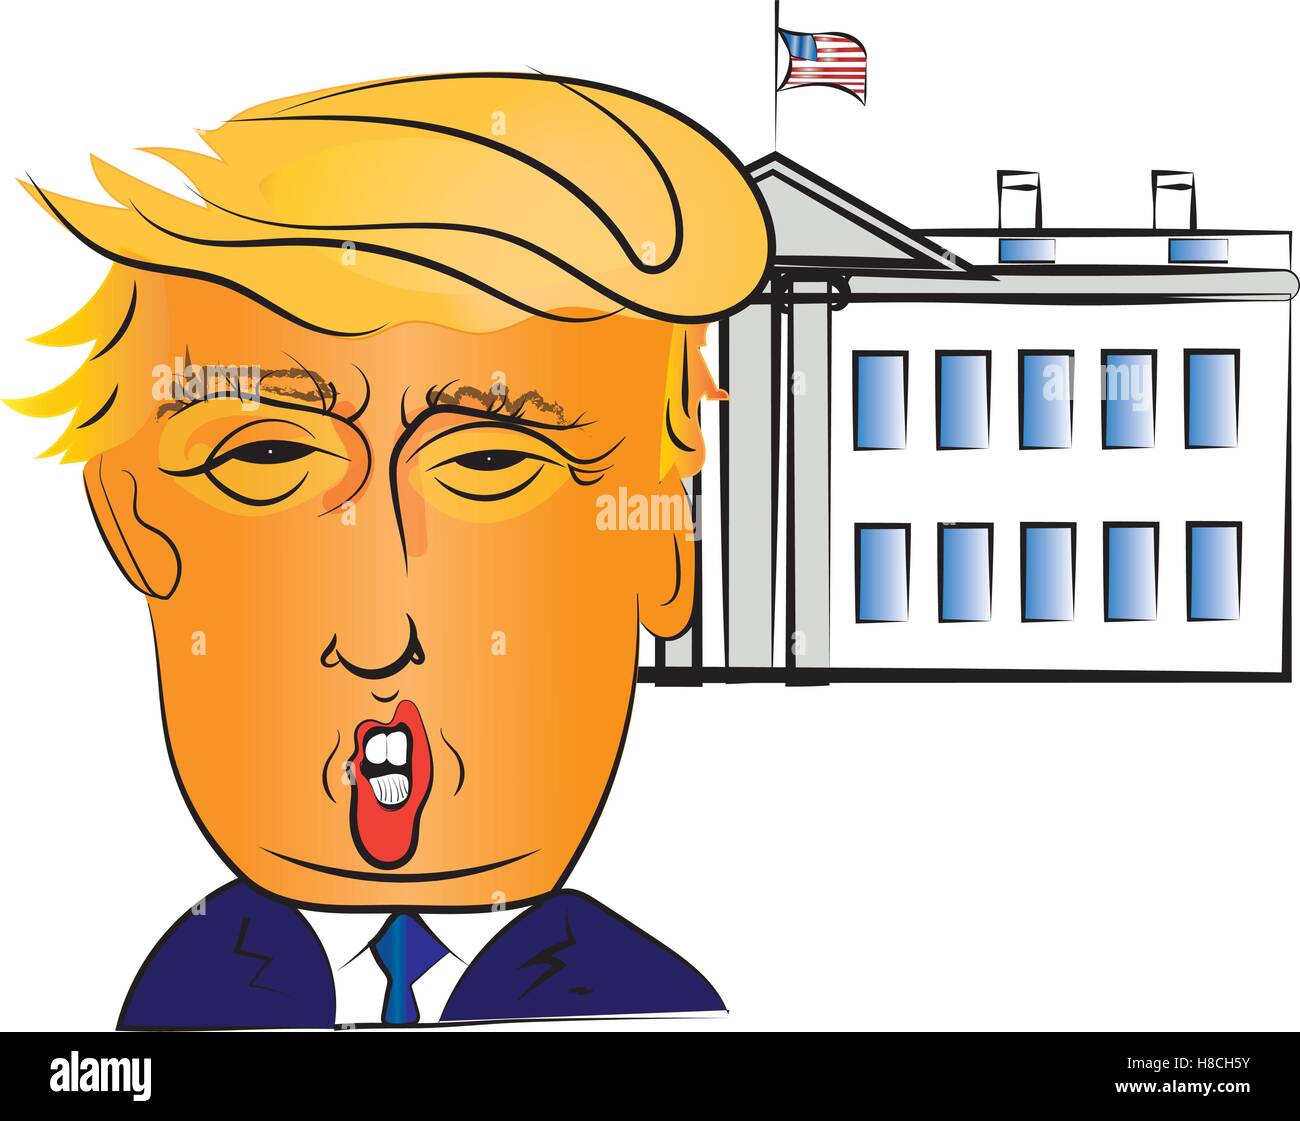 Charakter-Portrait von Donald Trump, der 45. Präsident der Vereinigten Staaten, mit dem weißen Haus Gebäude im Hintergrund Stock Vektor